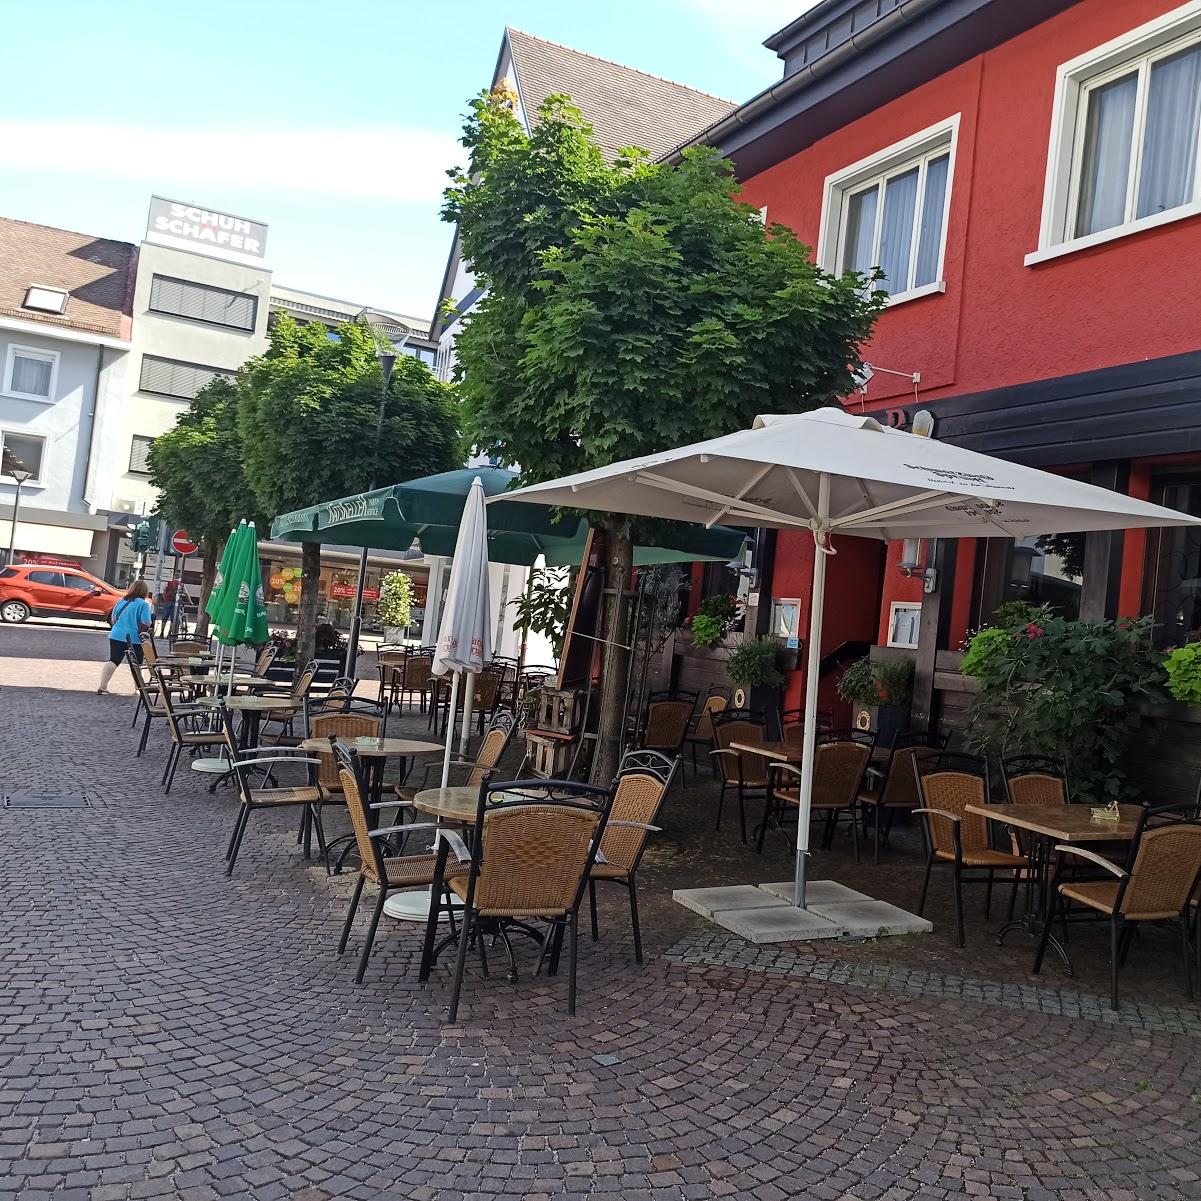 Restaurant "Ratskeller" in Achern